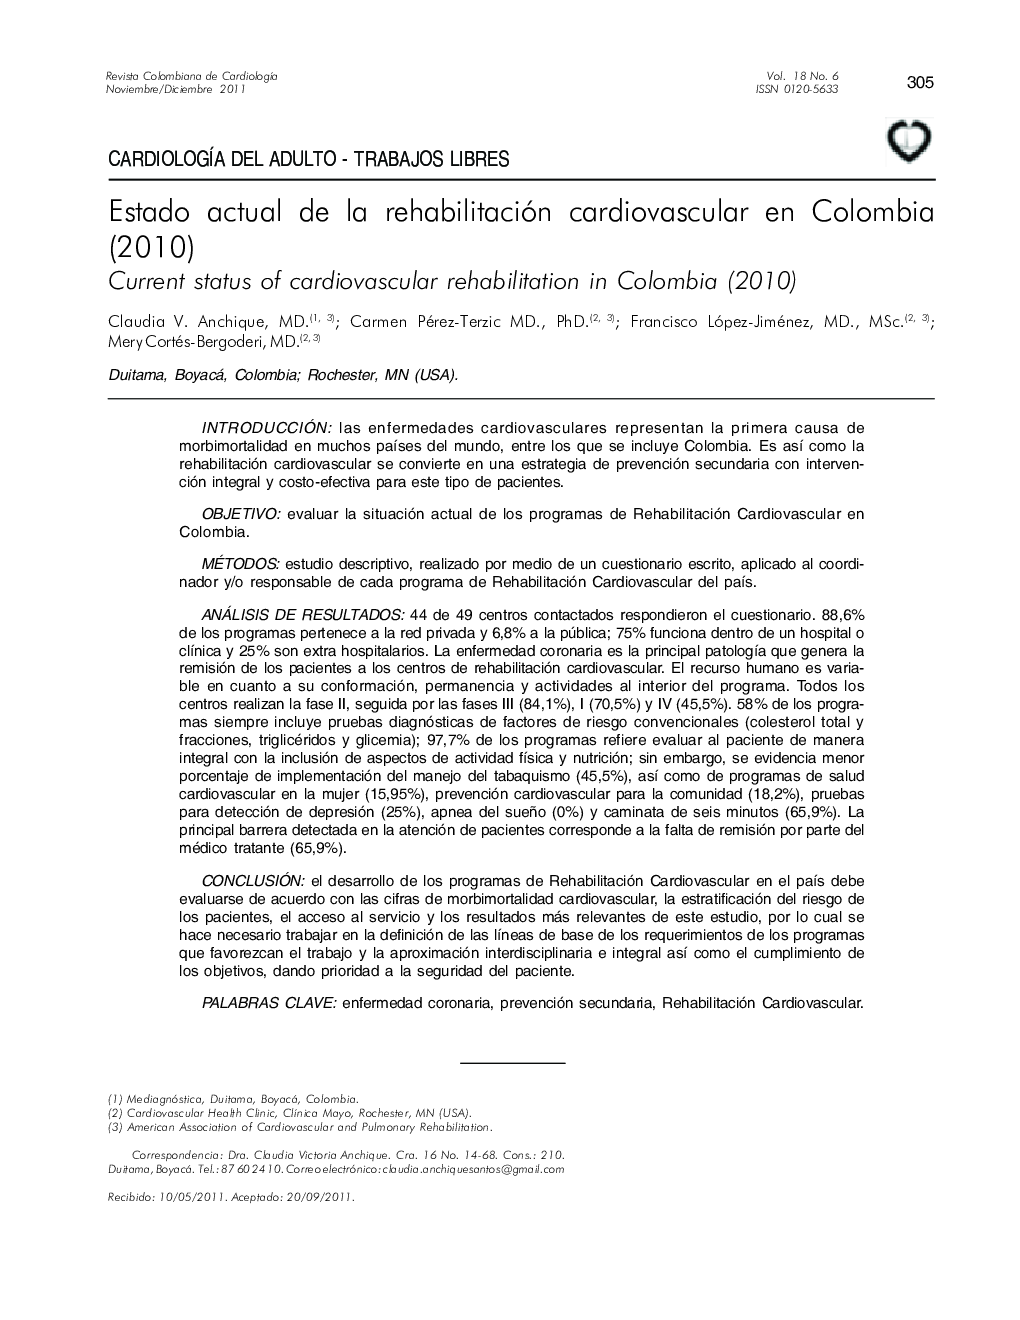 Estado actual de la rehabilitación cardiovascular en Colombia (2010)